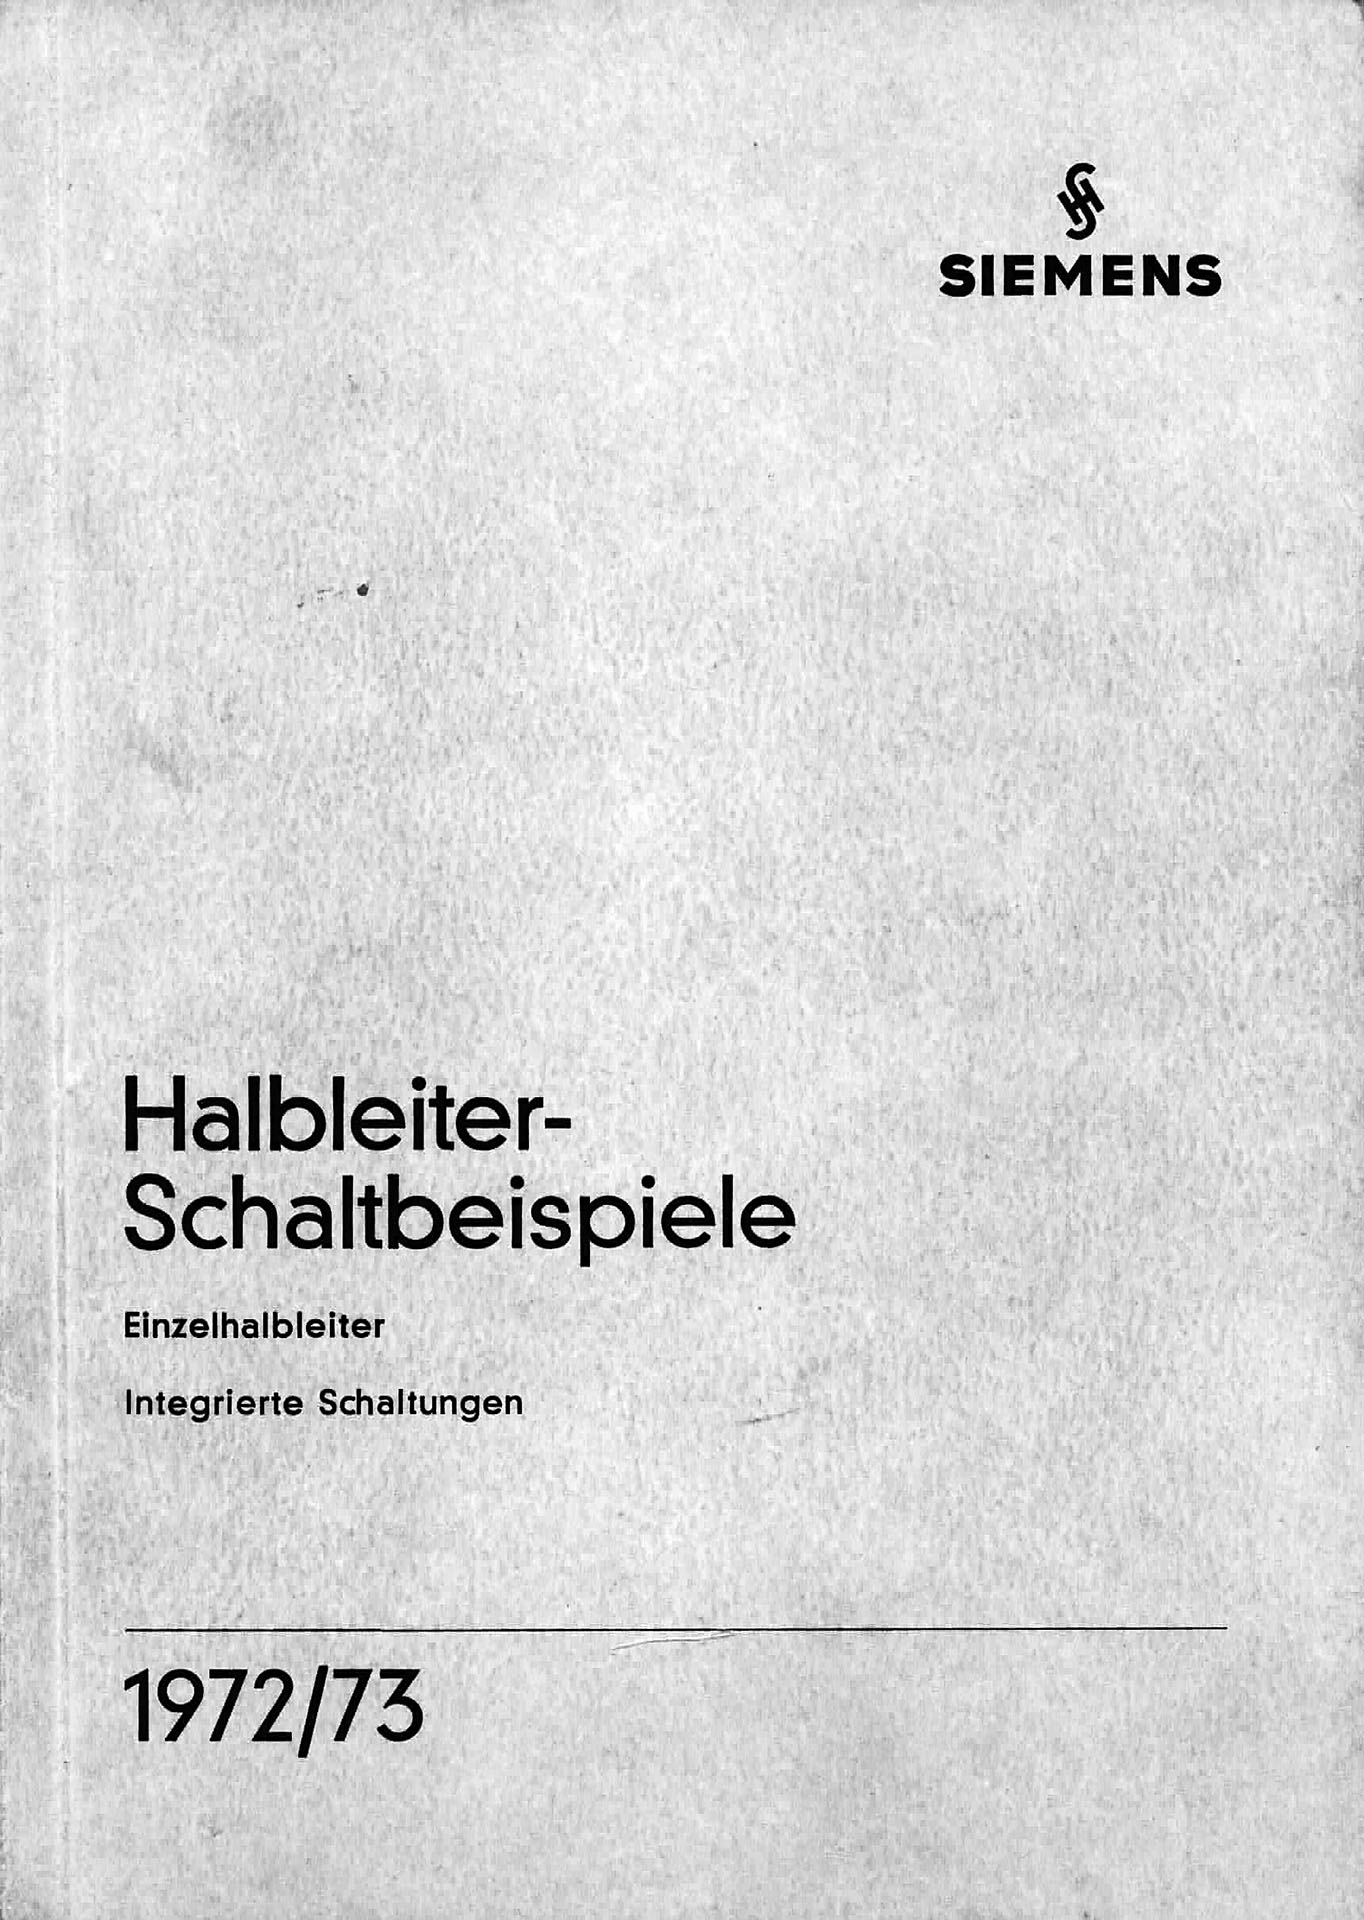 Halbleiter - Schaltbeispiele 1972/73